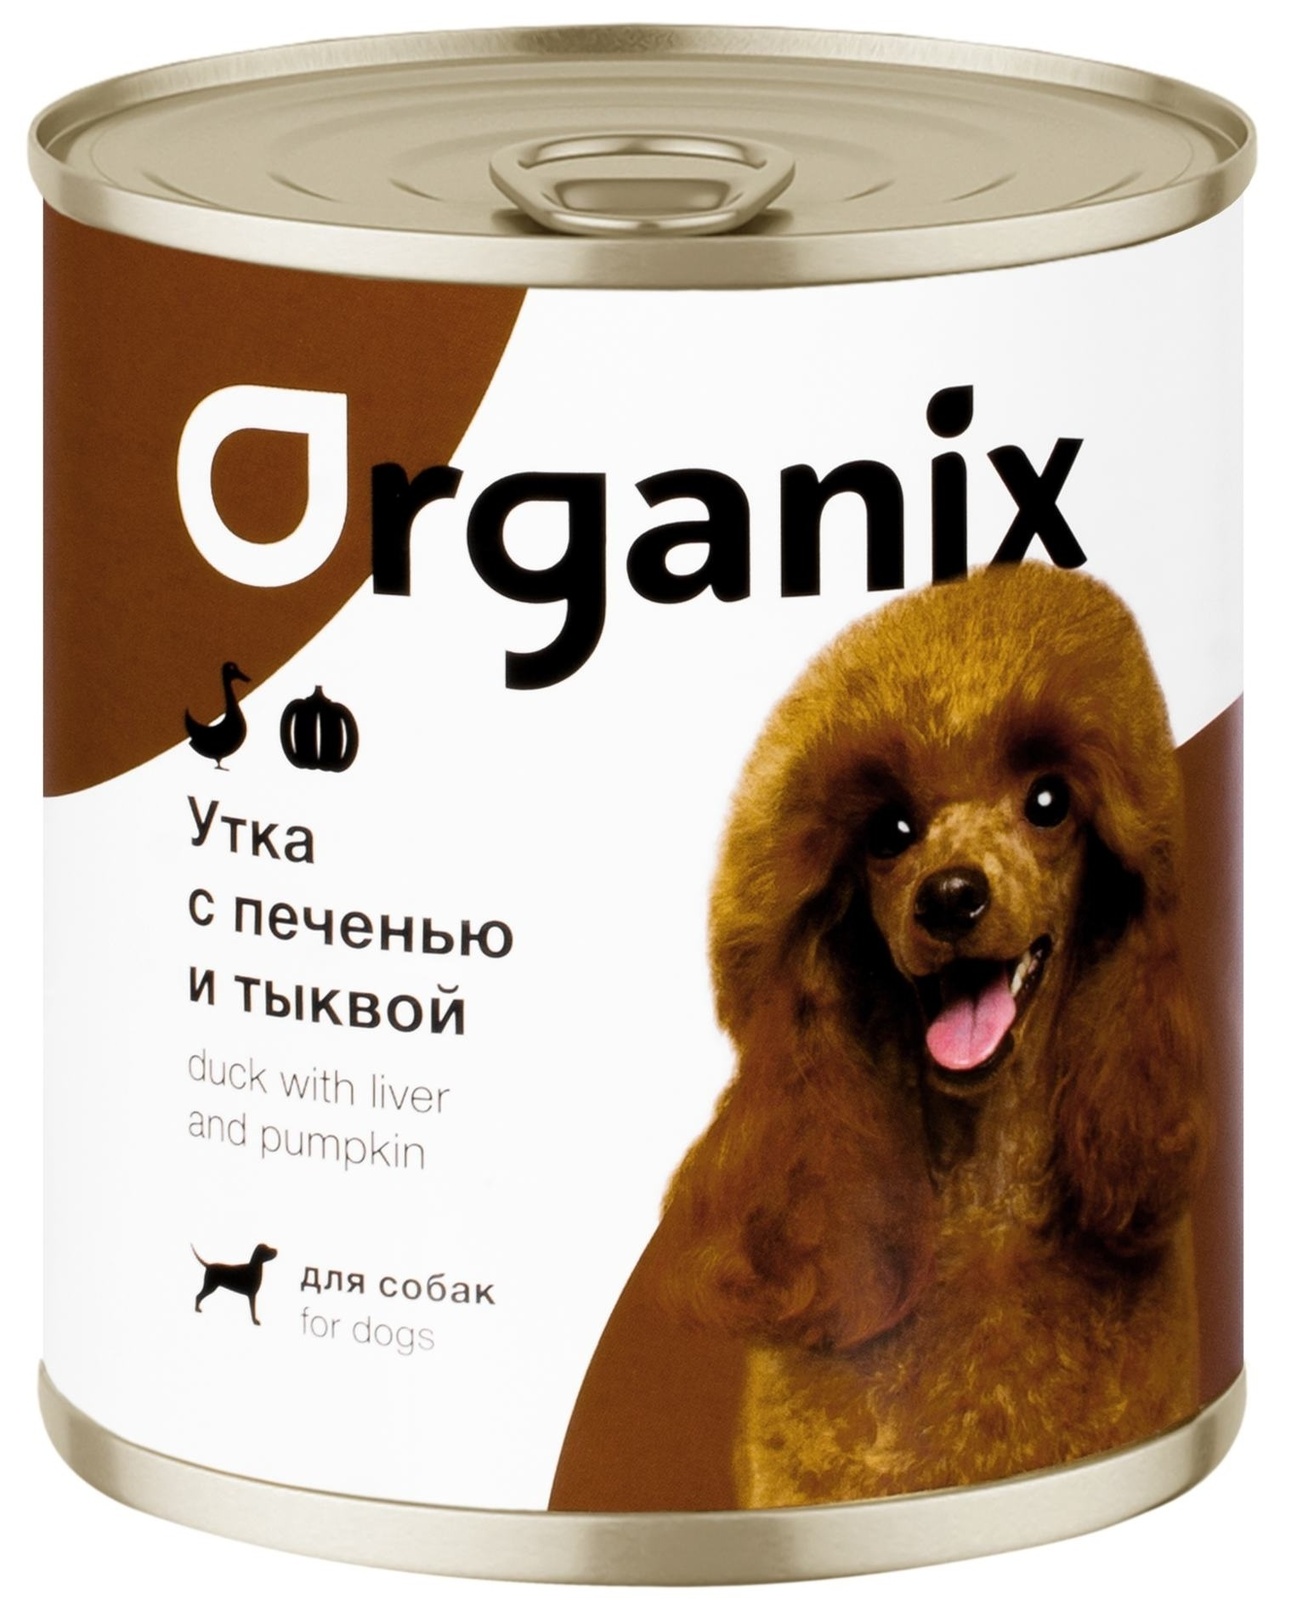 Organix консервы Organix консервы для собак Сочная утка с печенью и тыквой (750 г) organix консервы organix консервы для собак сочная утка с печенью и тыквой 750 г